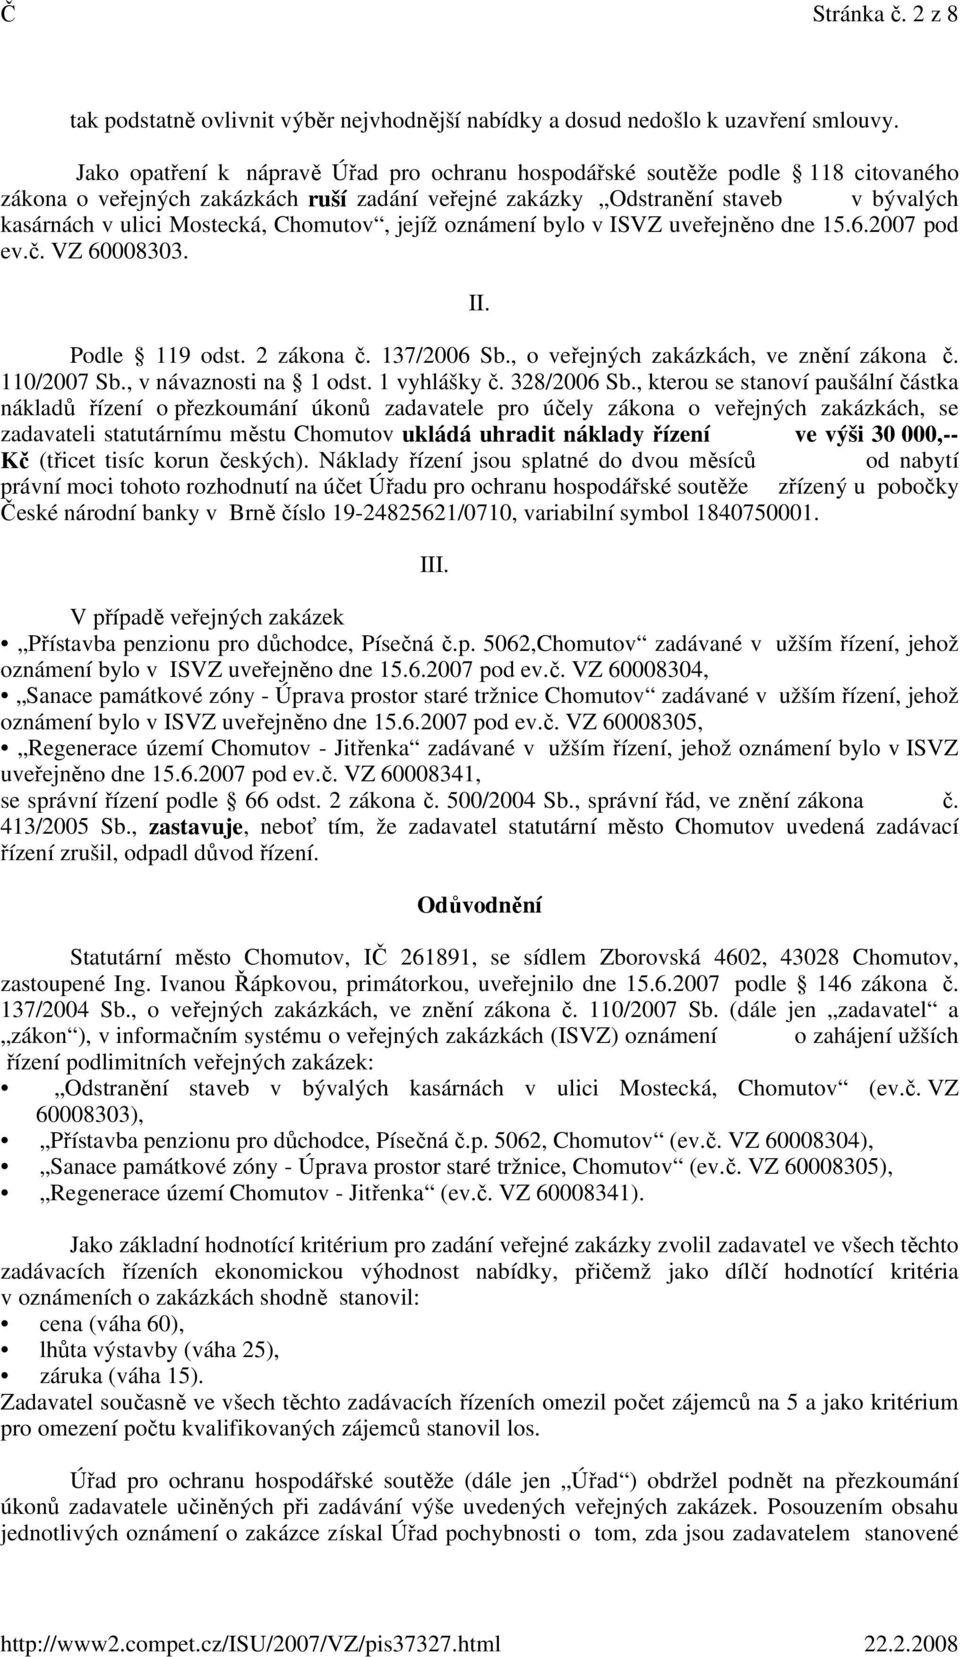 Chomutov, jejíž oznámení bylo v ISVZ uveřejněno dne 15.6.2007 pod ev.č. VZ 60008303. II. Podle 119 odst. 2 zákona č. 137/2006 Sb., o veřejných zakázkách, ve znění zákona č. 110/2007 Sb.